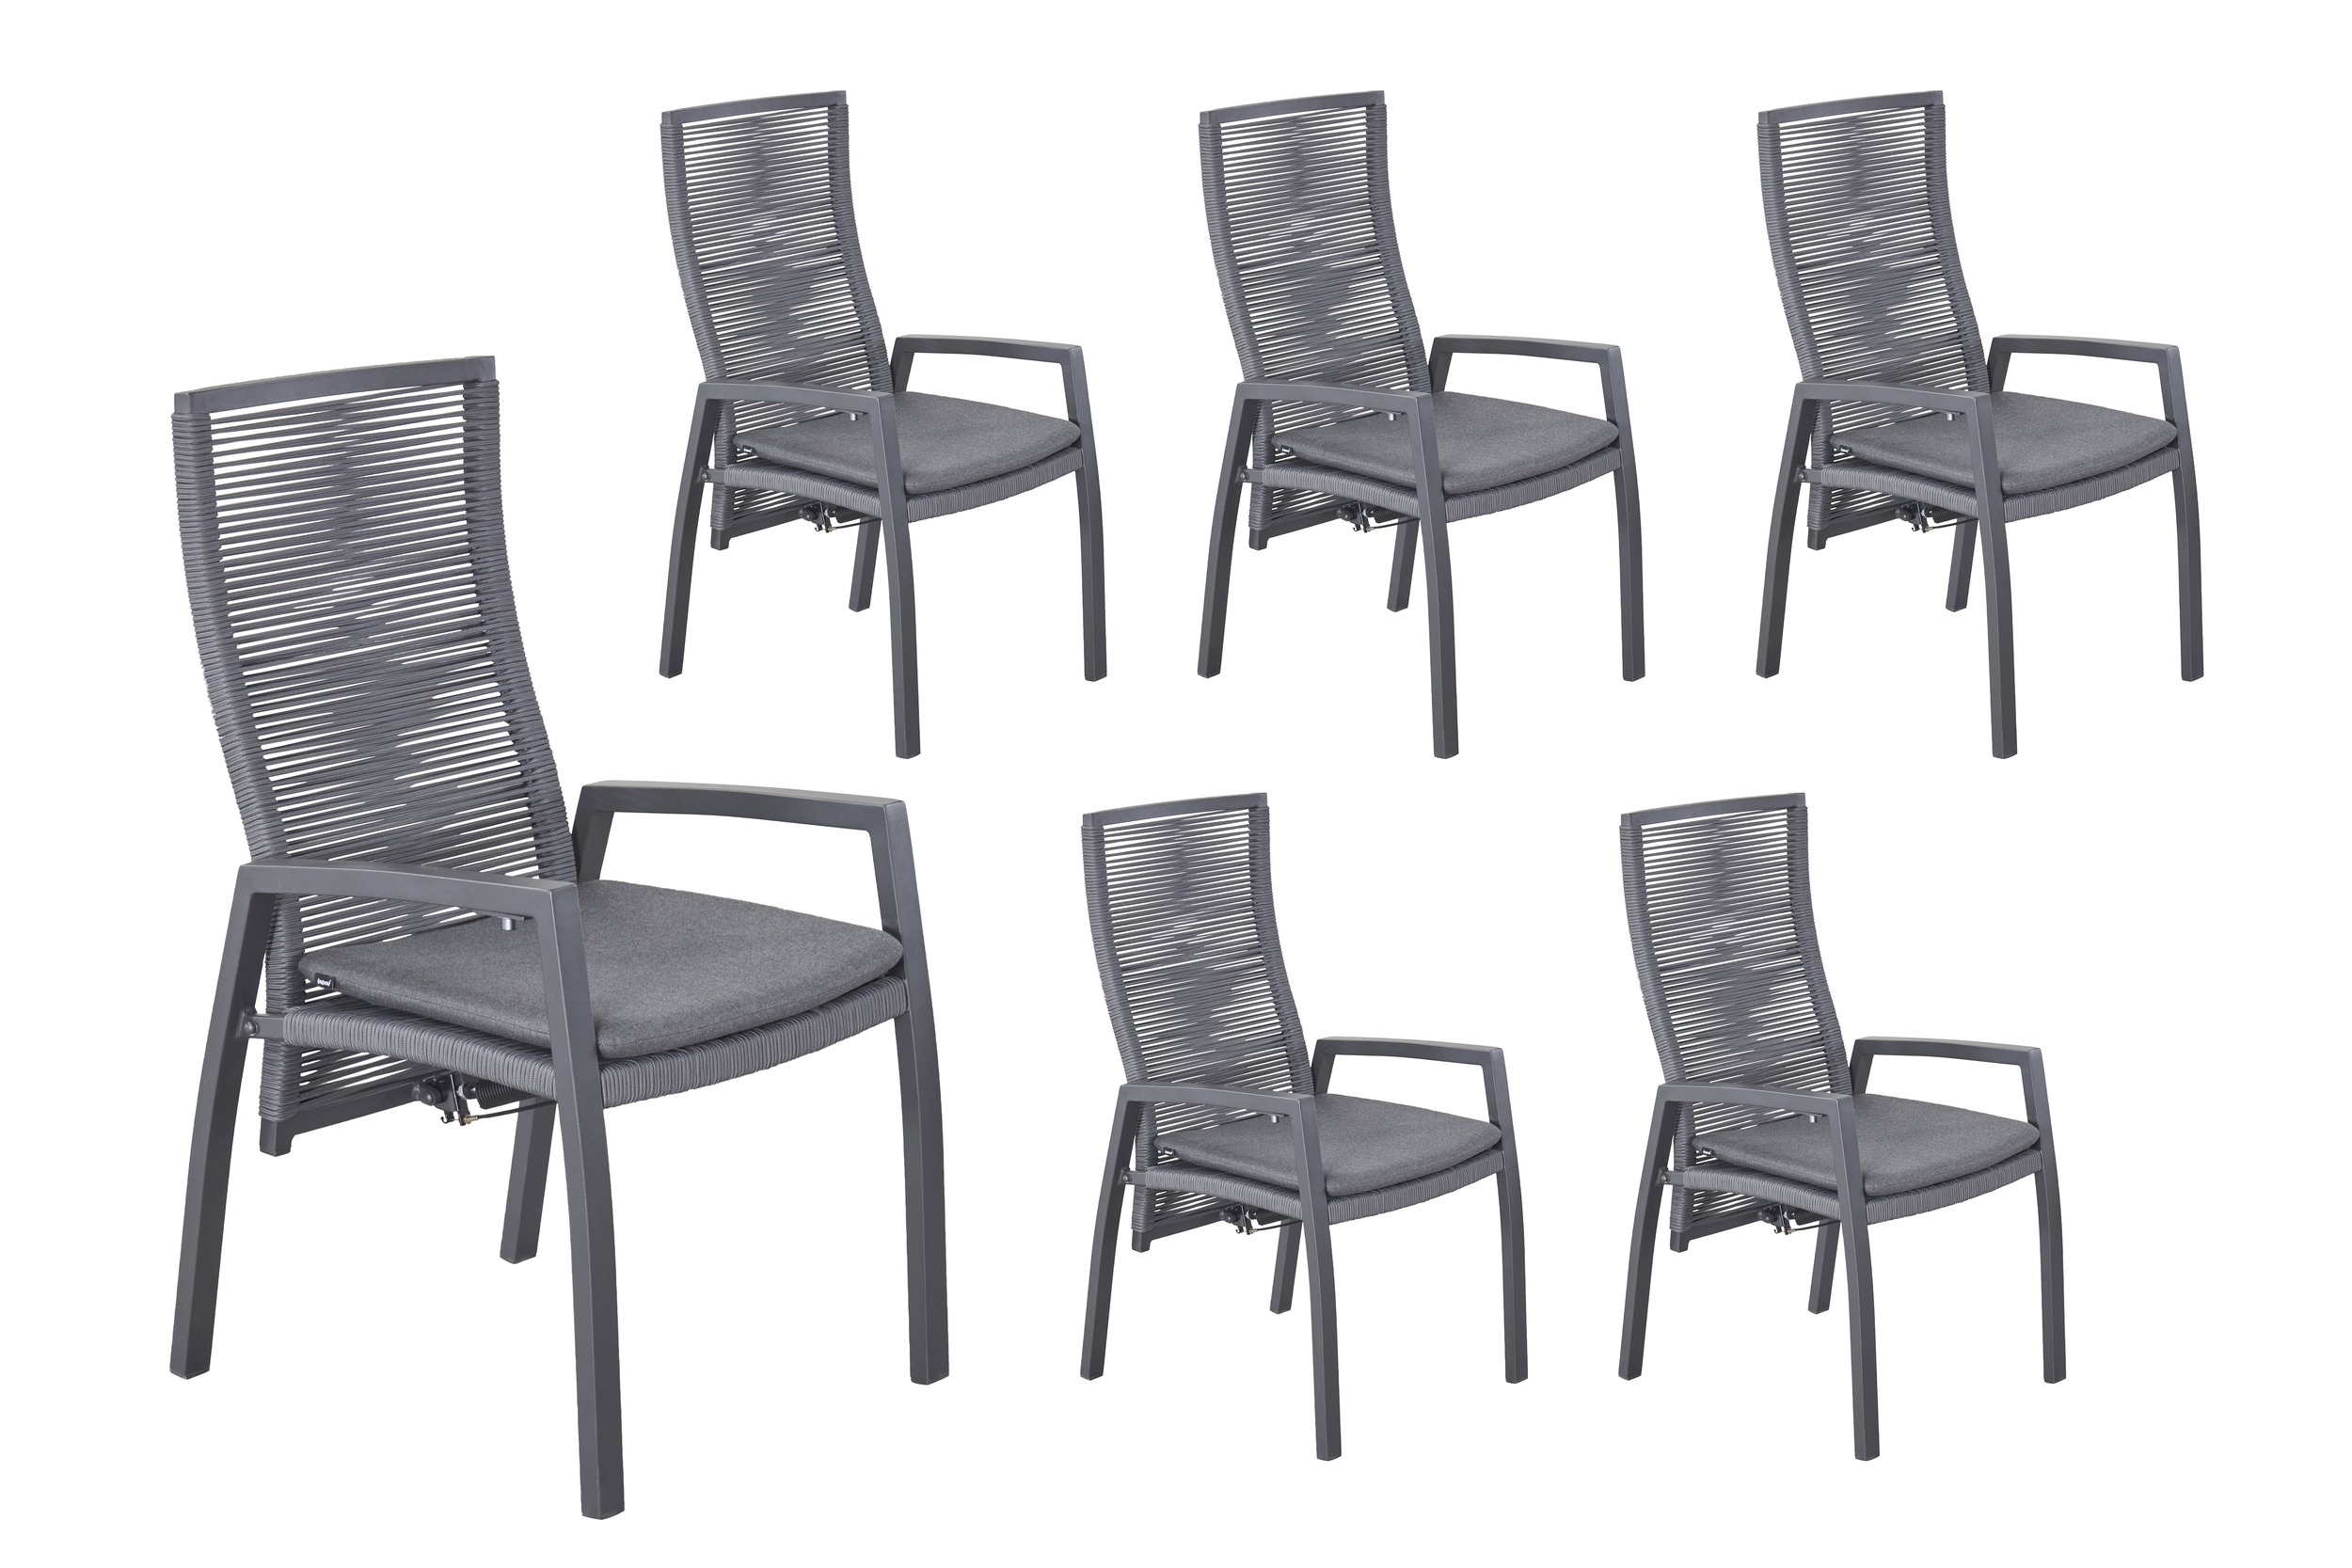 LC Garden 6er Set »Diwo« Gartenstuhl anthrazit/grau Aluminium/Rope Positionsstuhl mit Sitzkissen aus Sunbrella® Stoff